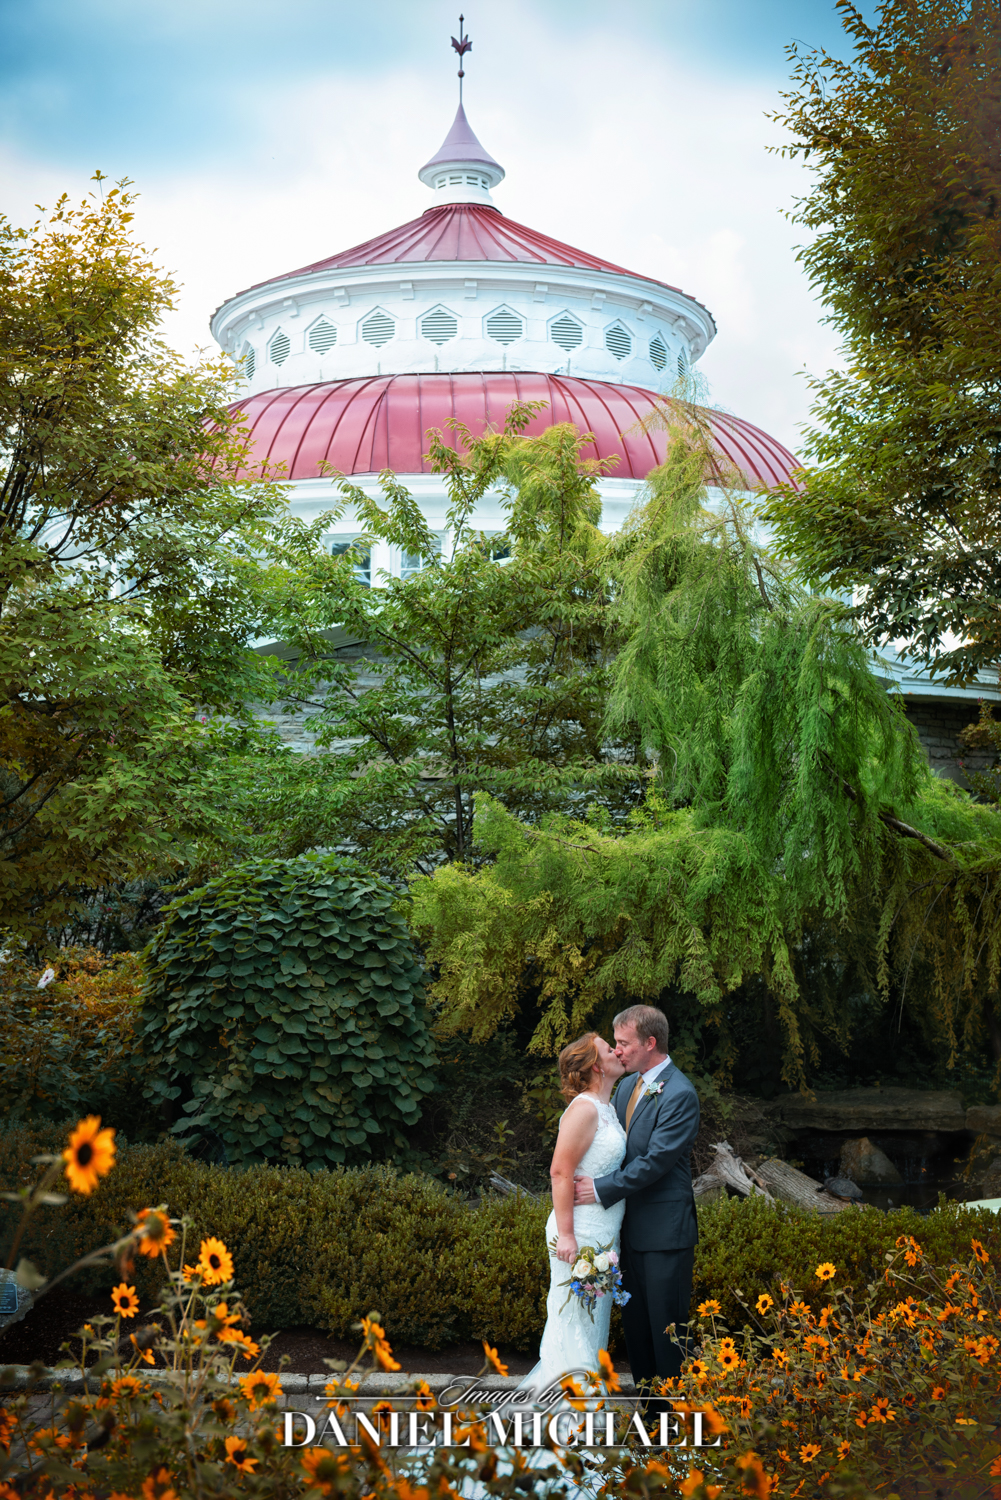 Cincinnati Zoo Wedding Photography